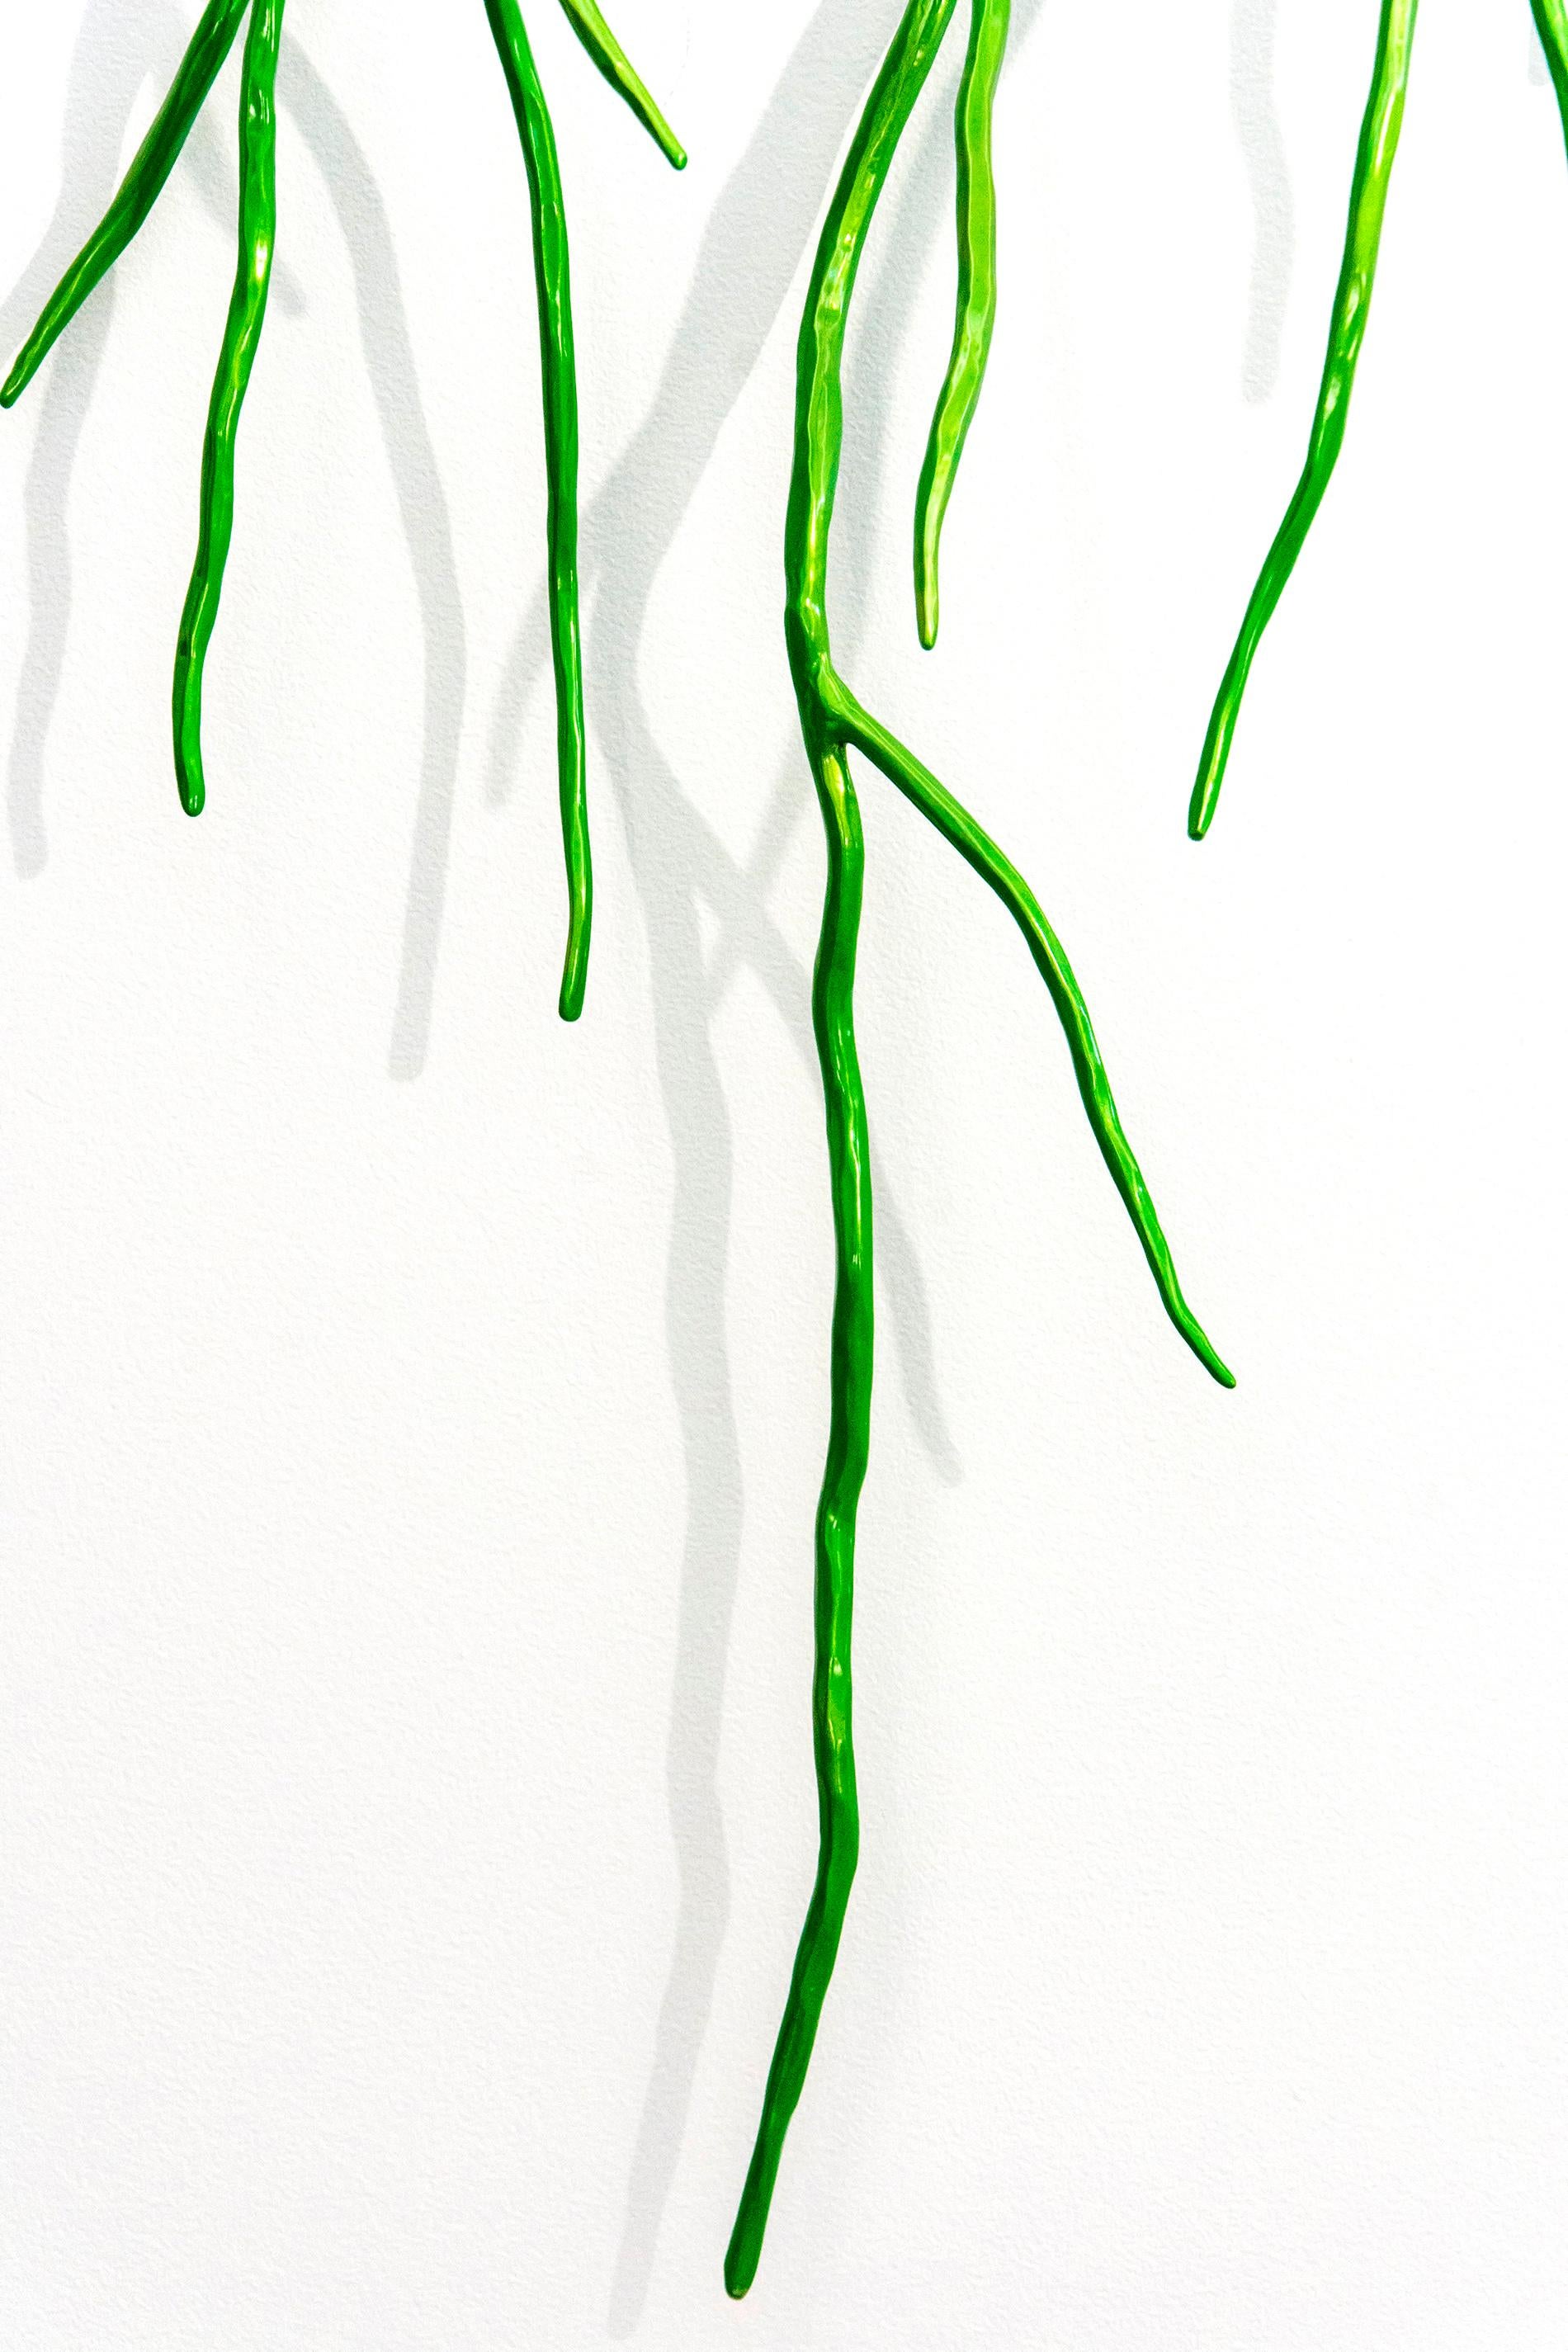 Der kanadische Bildhauermeister Shayne Dark hat den Stahl in einem glänzenden Apfelgrün beschichtet und von Hand zu einem fein gearbeiteten Ast geschmiedet. Diese Wandskulptur ist, wie die meisten von Darks Werken, von natürlichen Formen inspiriert